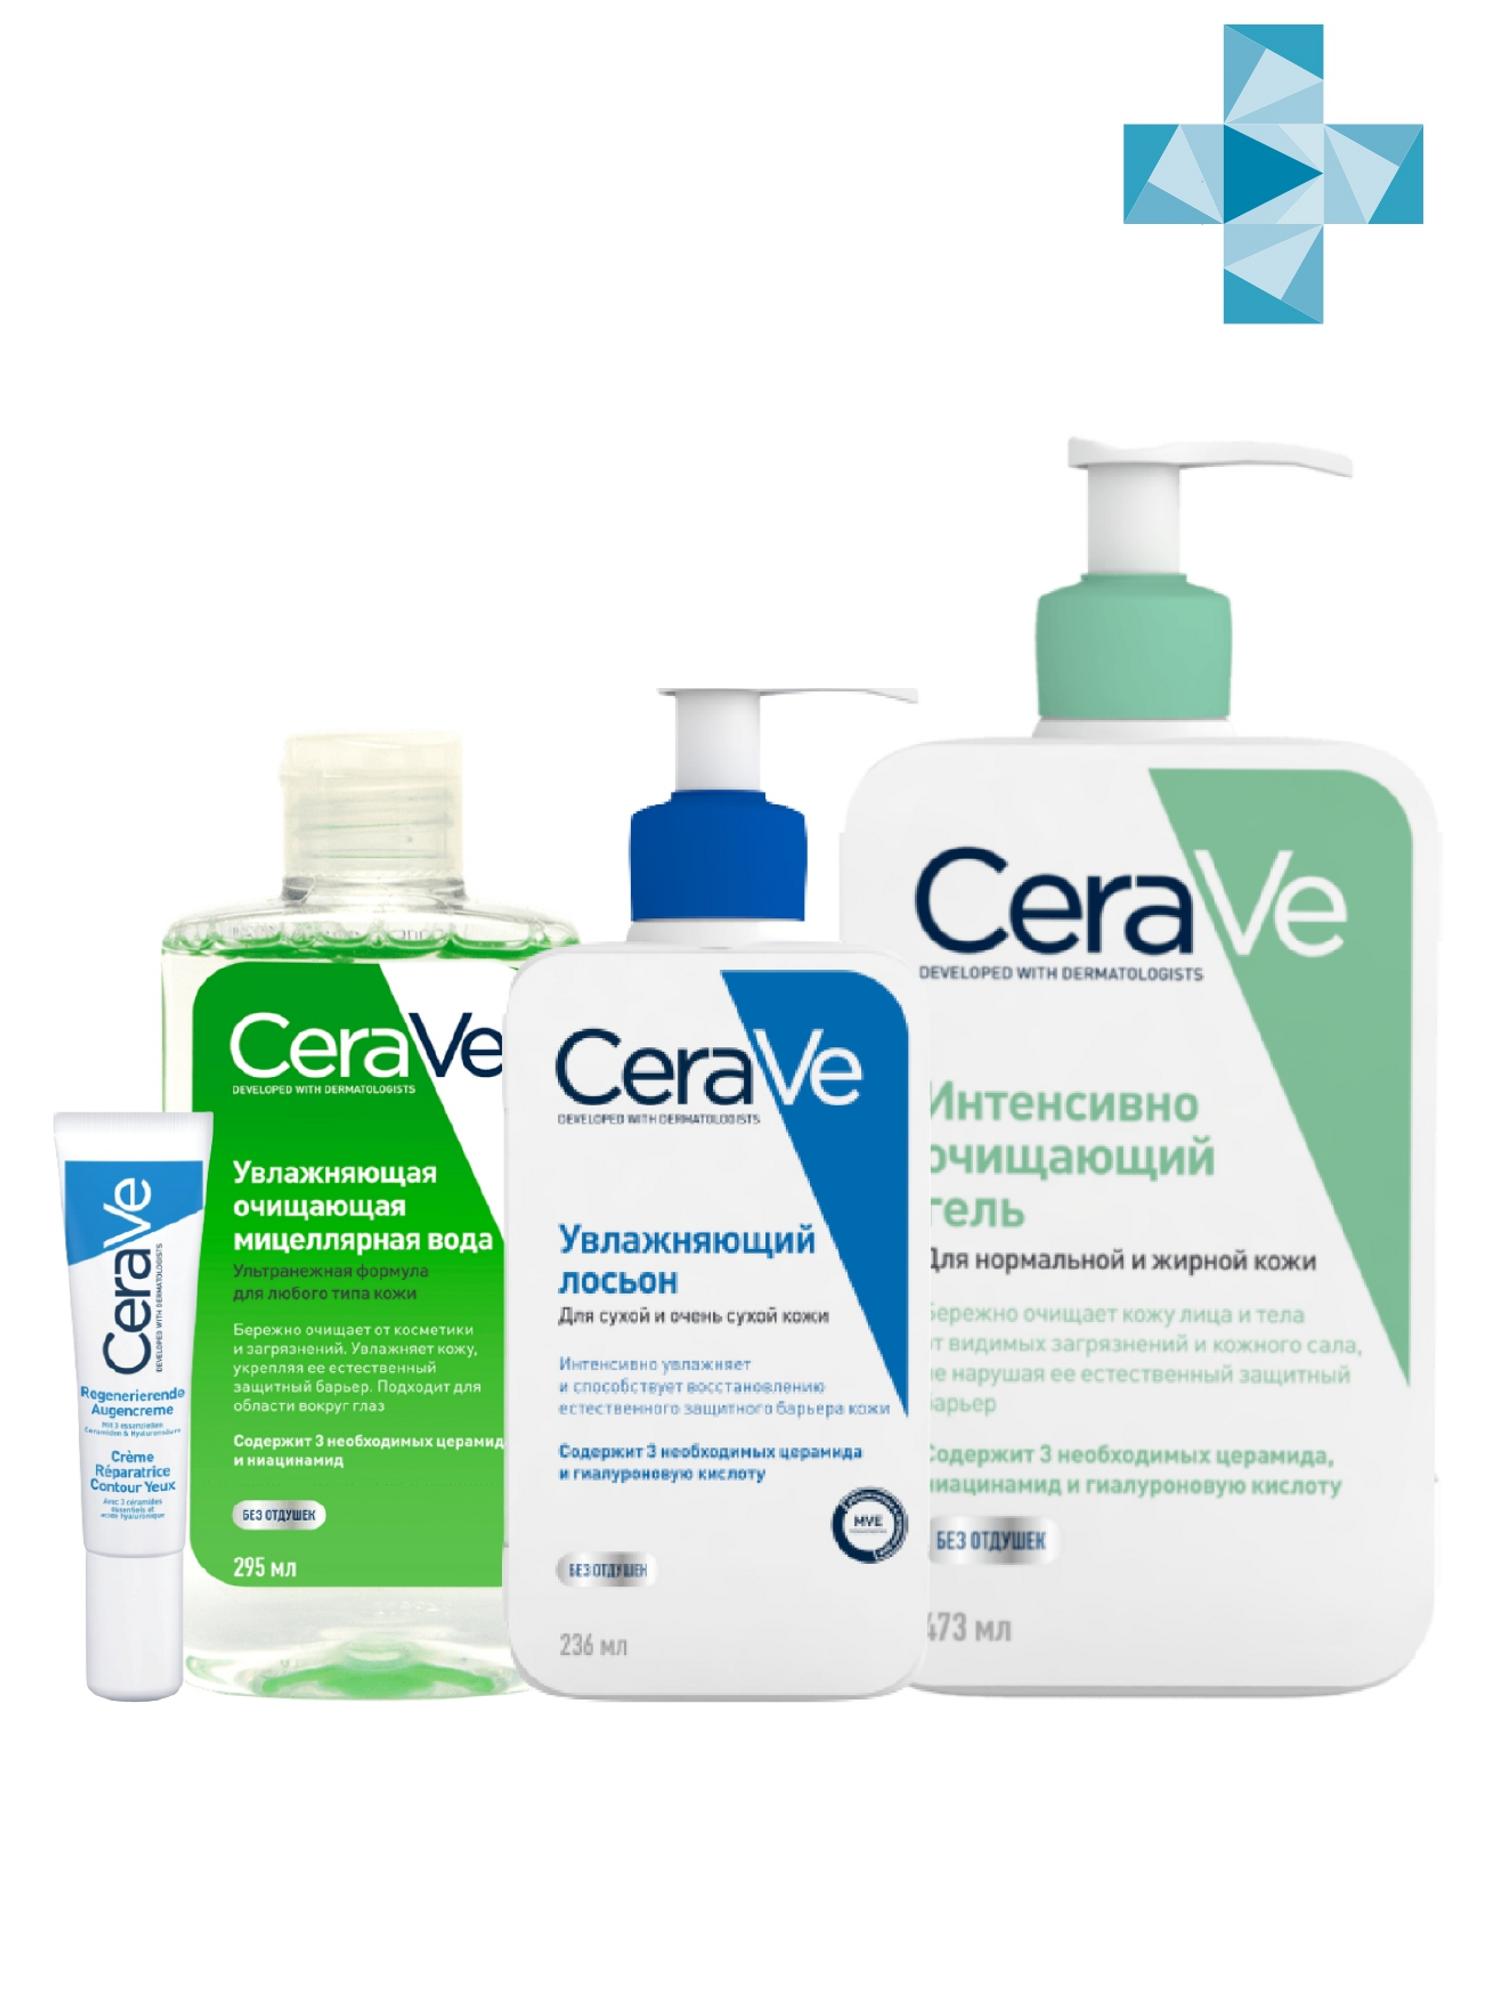 Купить CeraVe Набор для жирной кожи: Мицеллярная вода 295 мл + Очищающий гель 473 мл + Увлажняющий лосьон 236 мл + Крем для век 14 мл (CeraVe, Увлажнение кожи), Франция